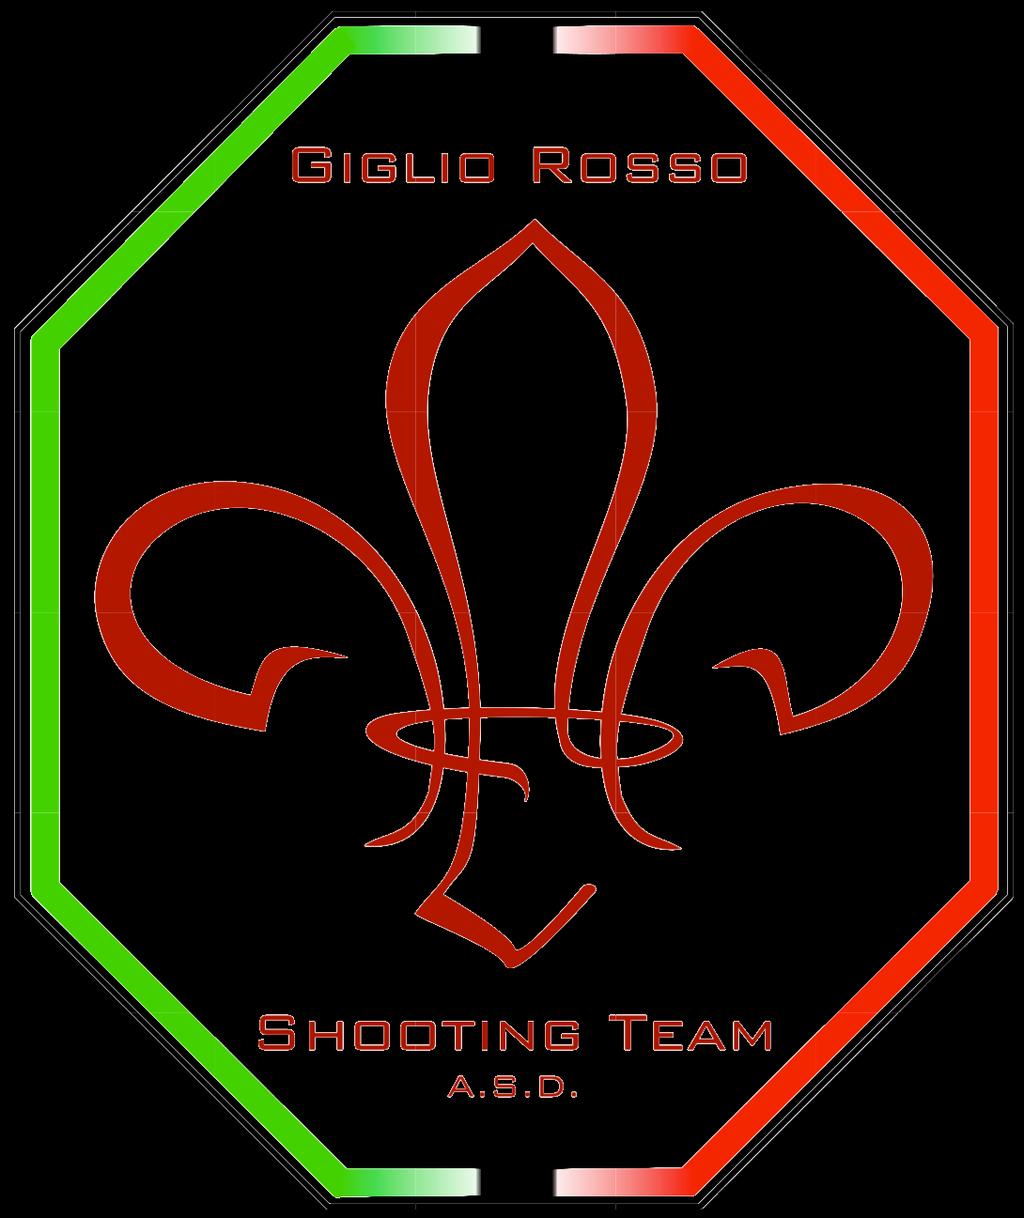 REGOLAMENTO EL ALAMEIN Q33 Giglio Rosso Shooting Team